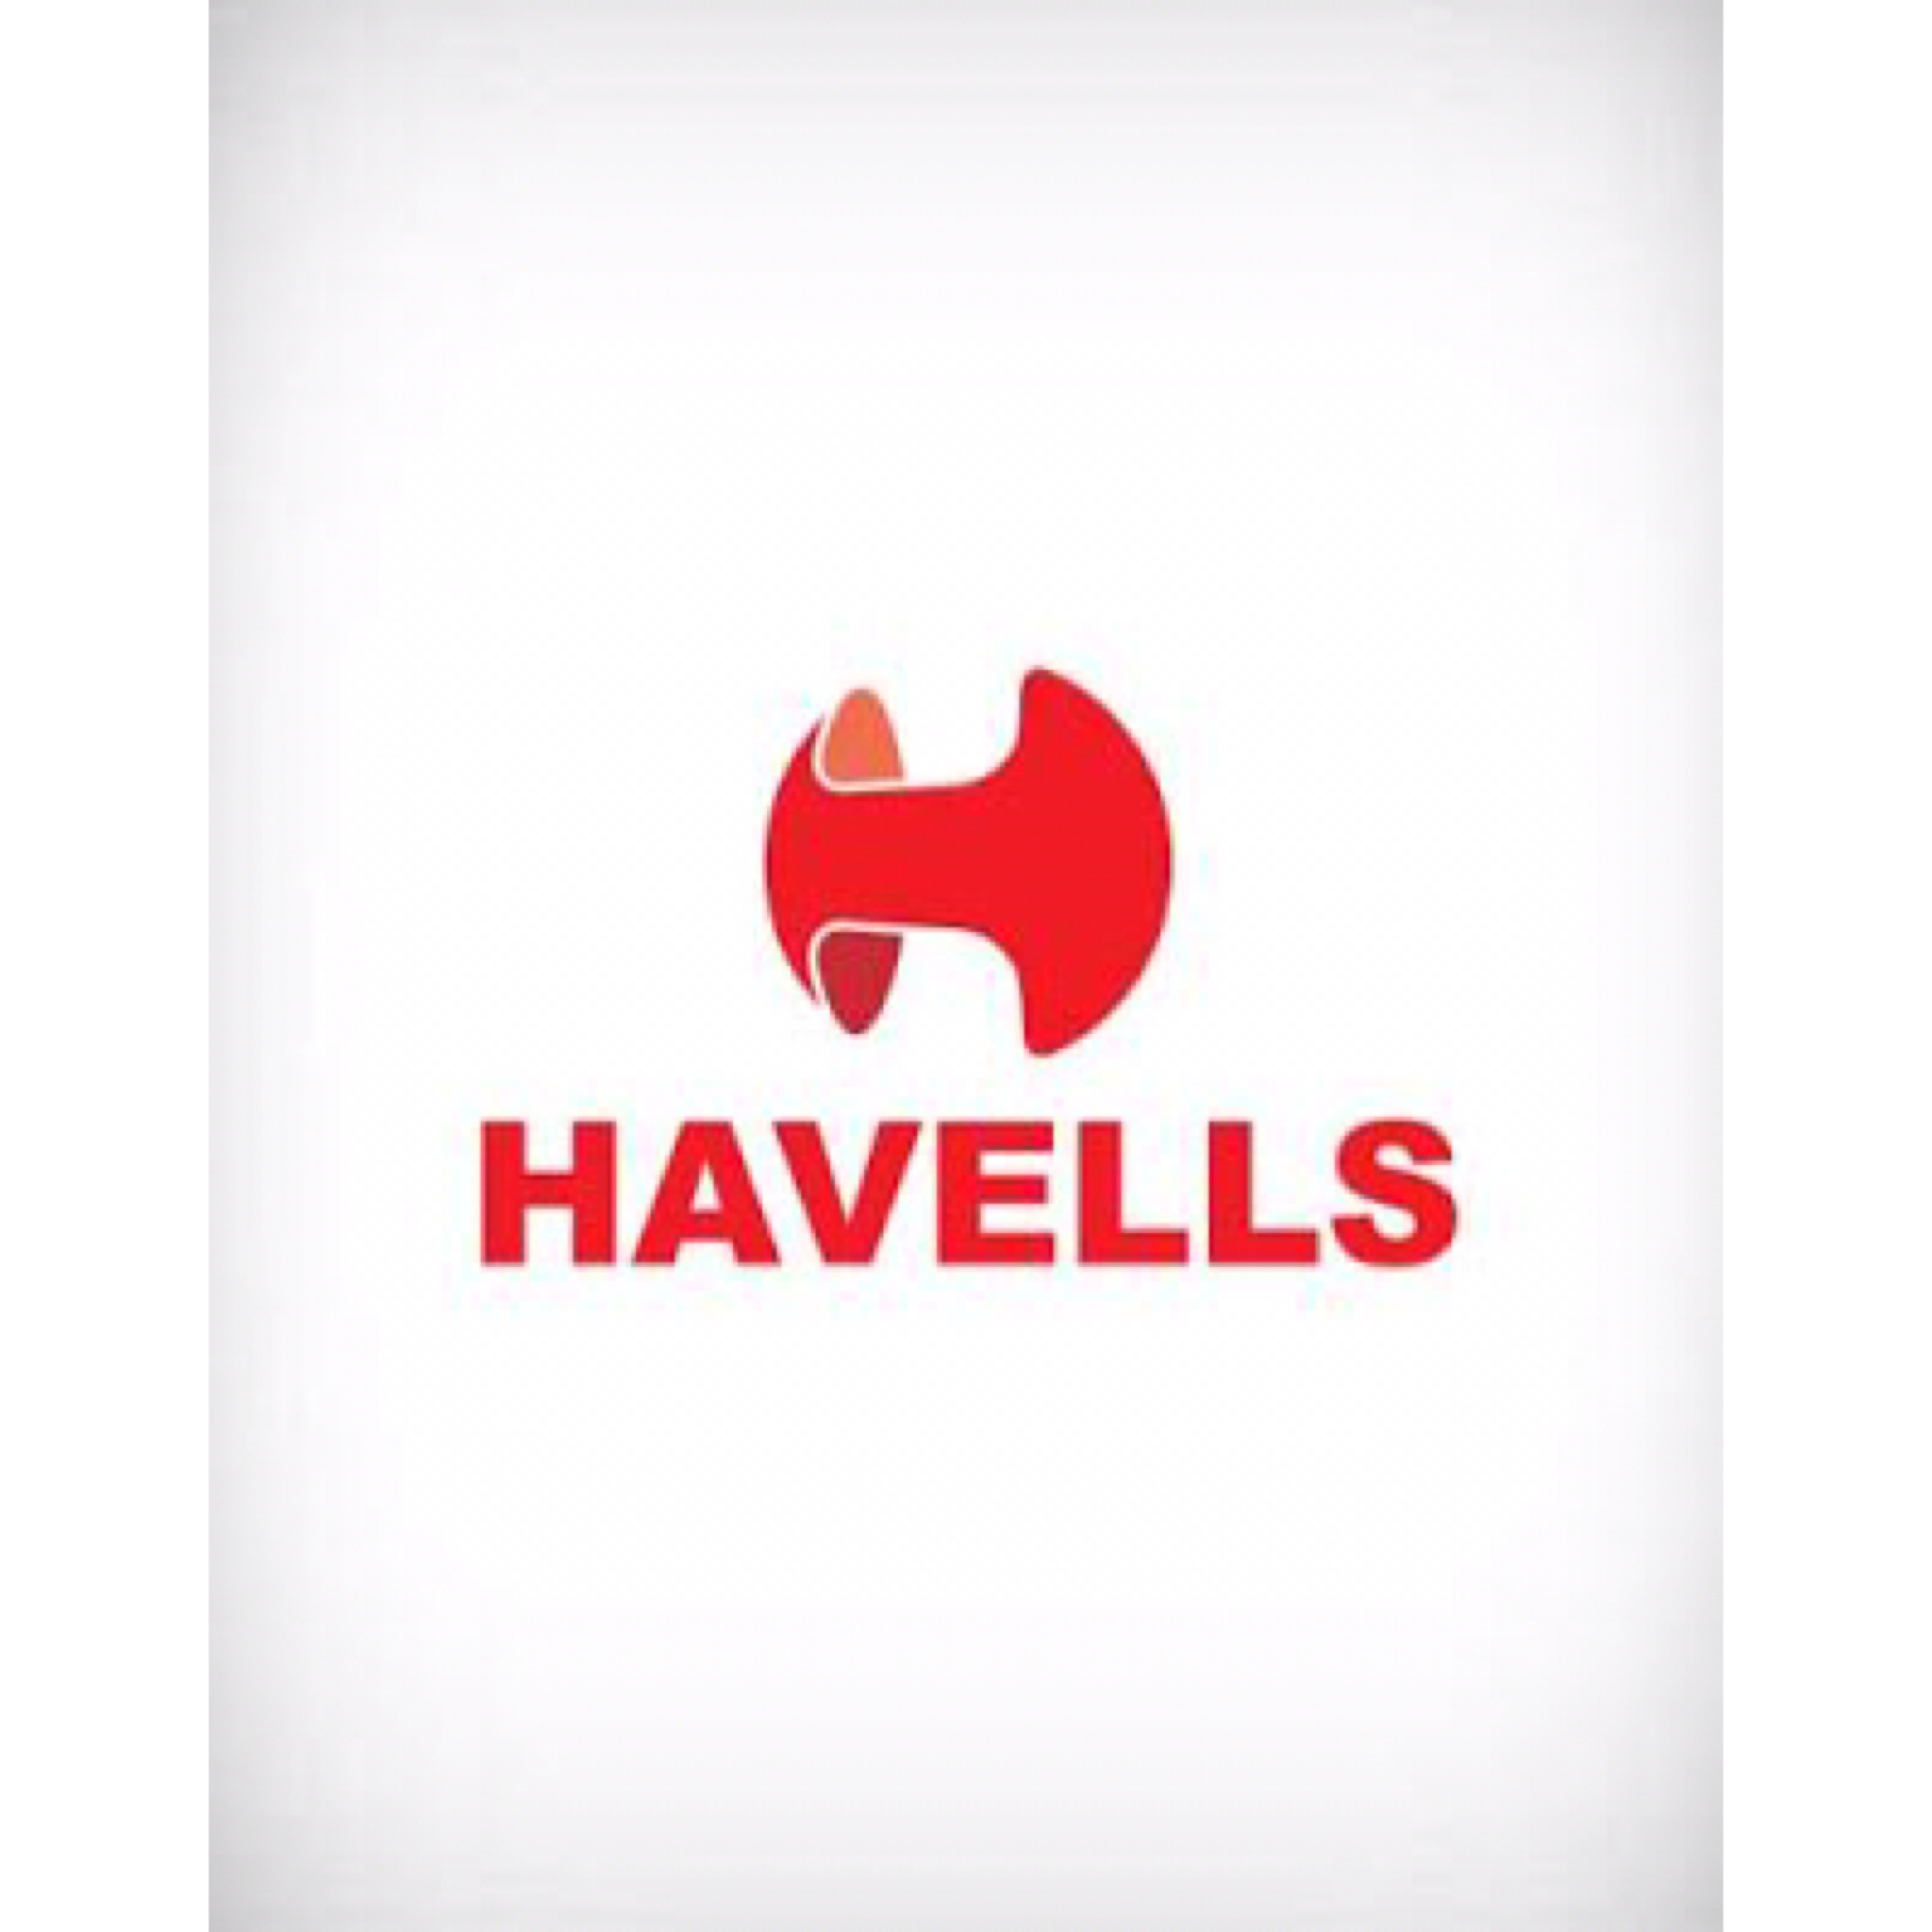 #Havells